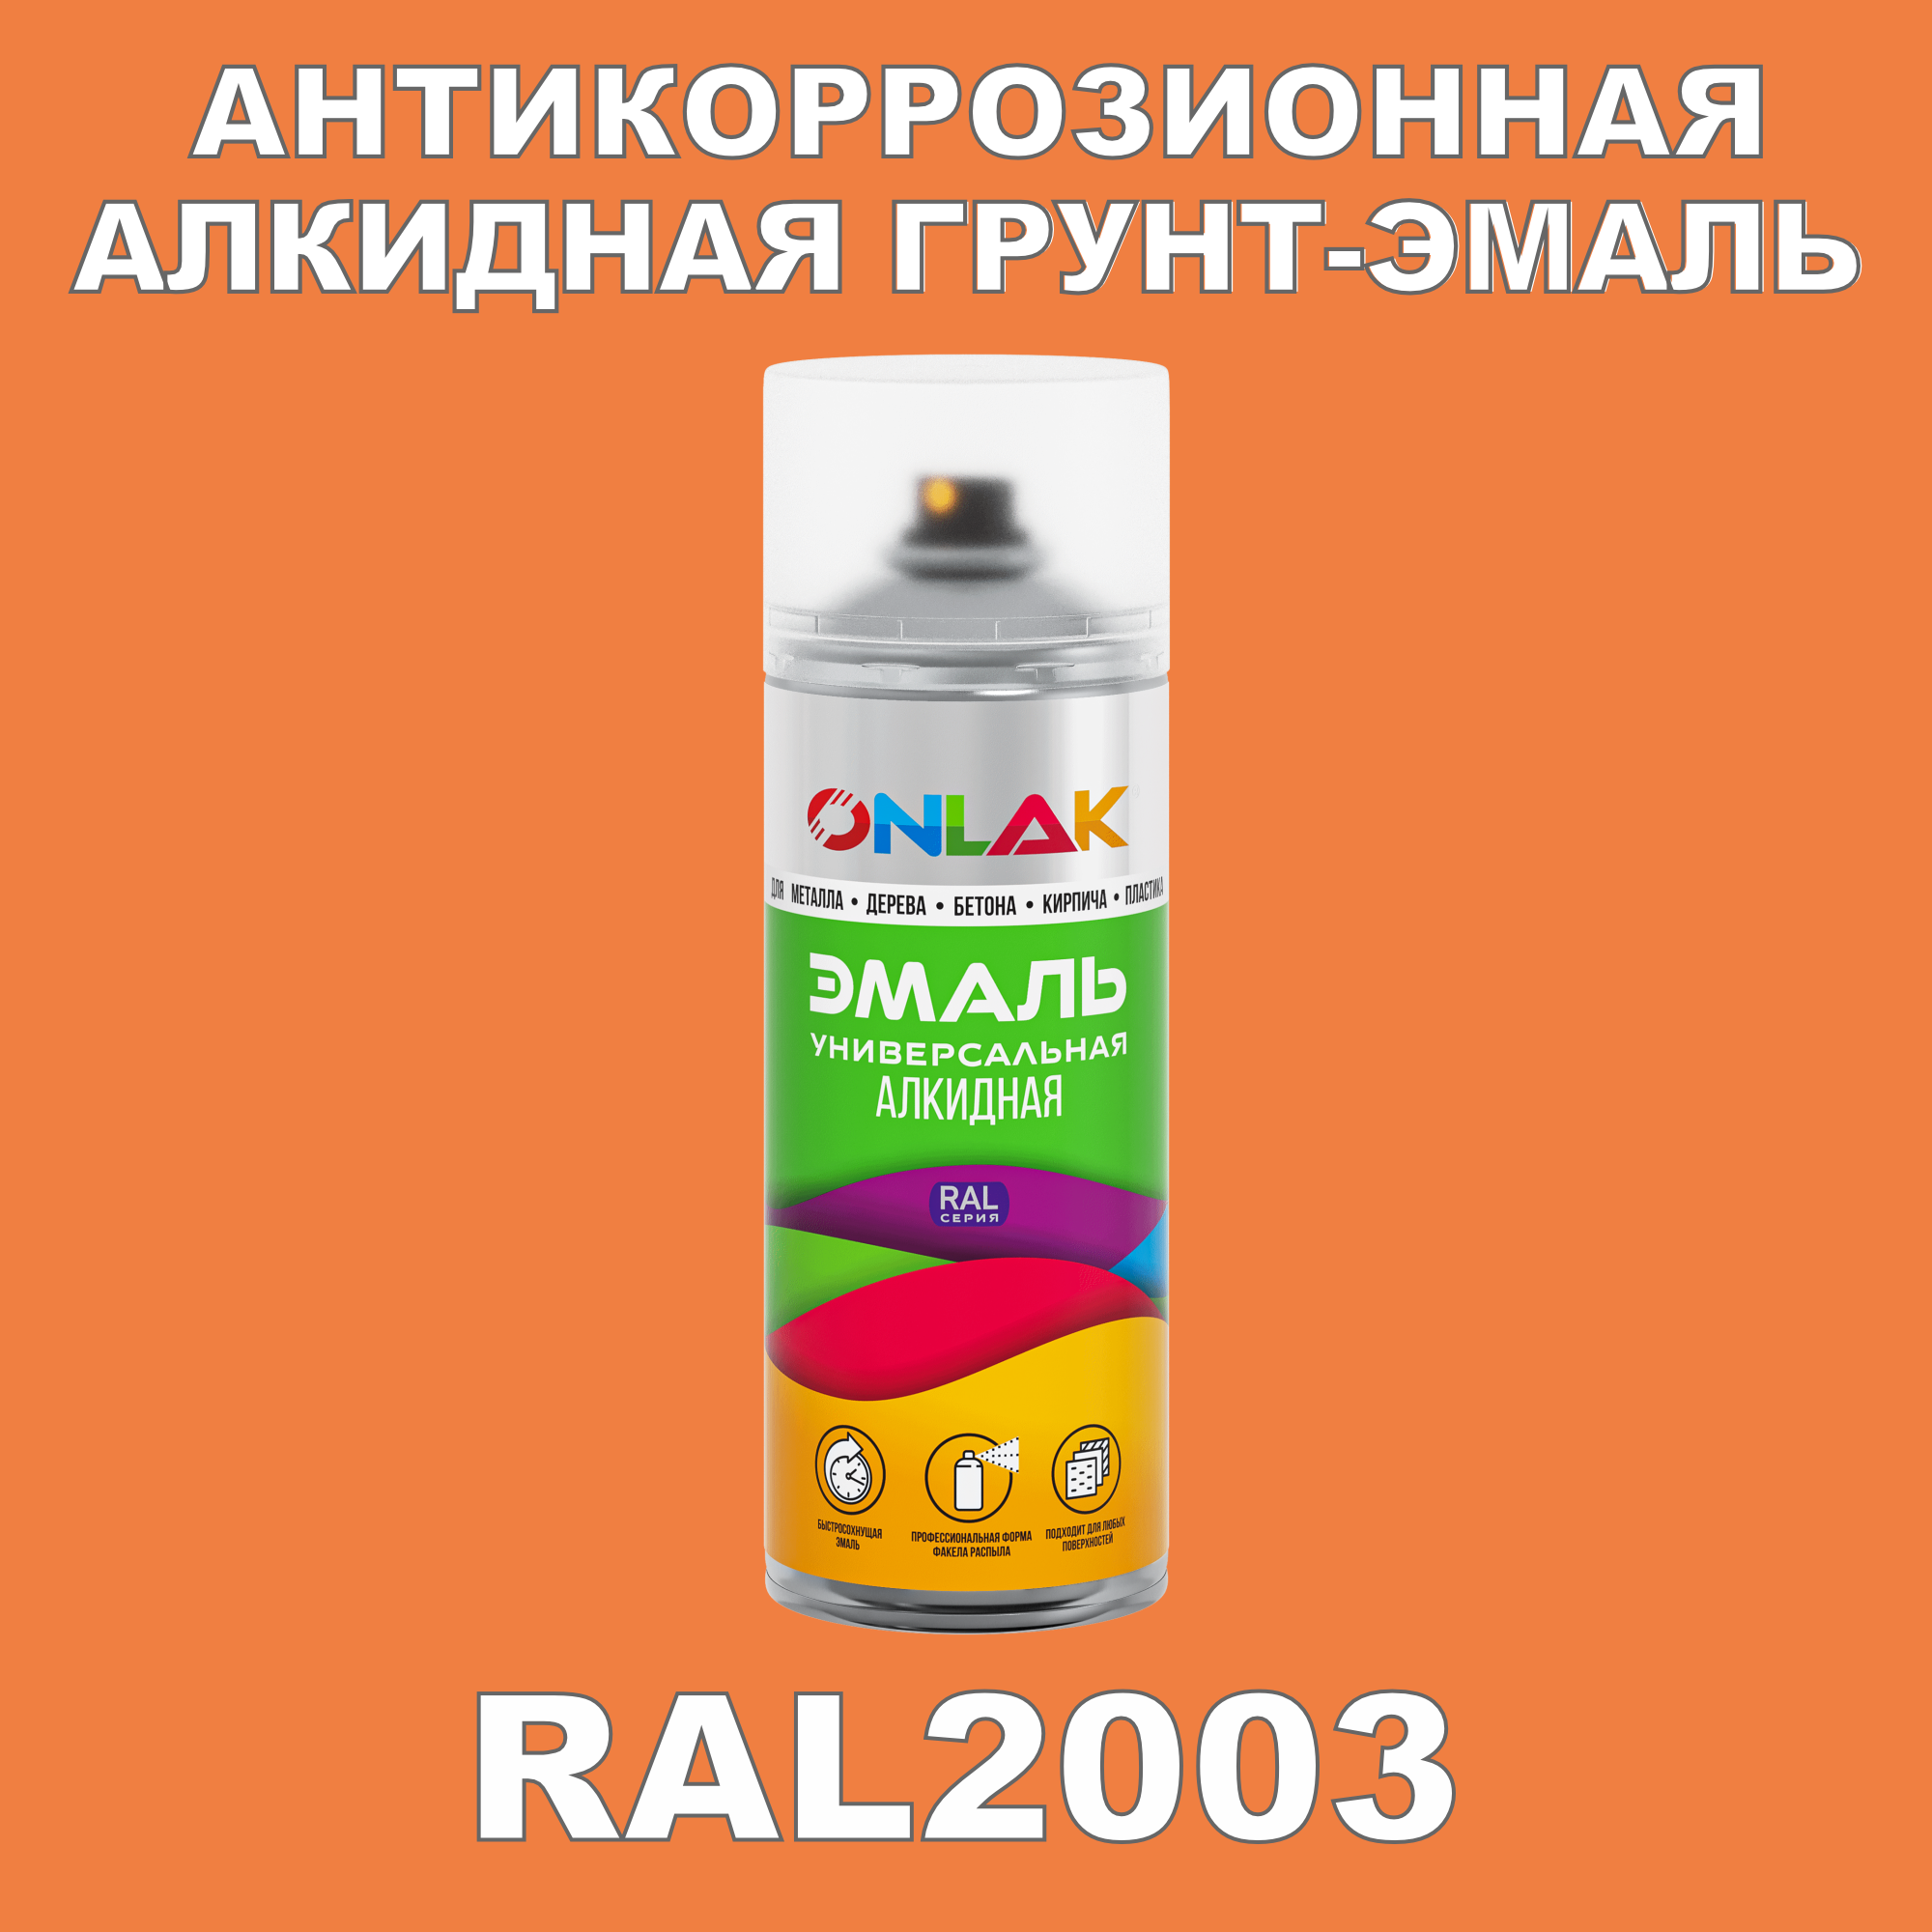 Антикоррозионная грунт-эмаль ONLAK RAL2003 полуматовая для металла и защиты от ржавчины